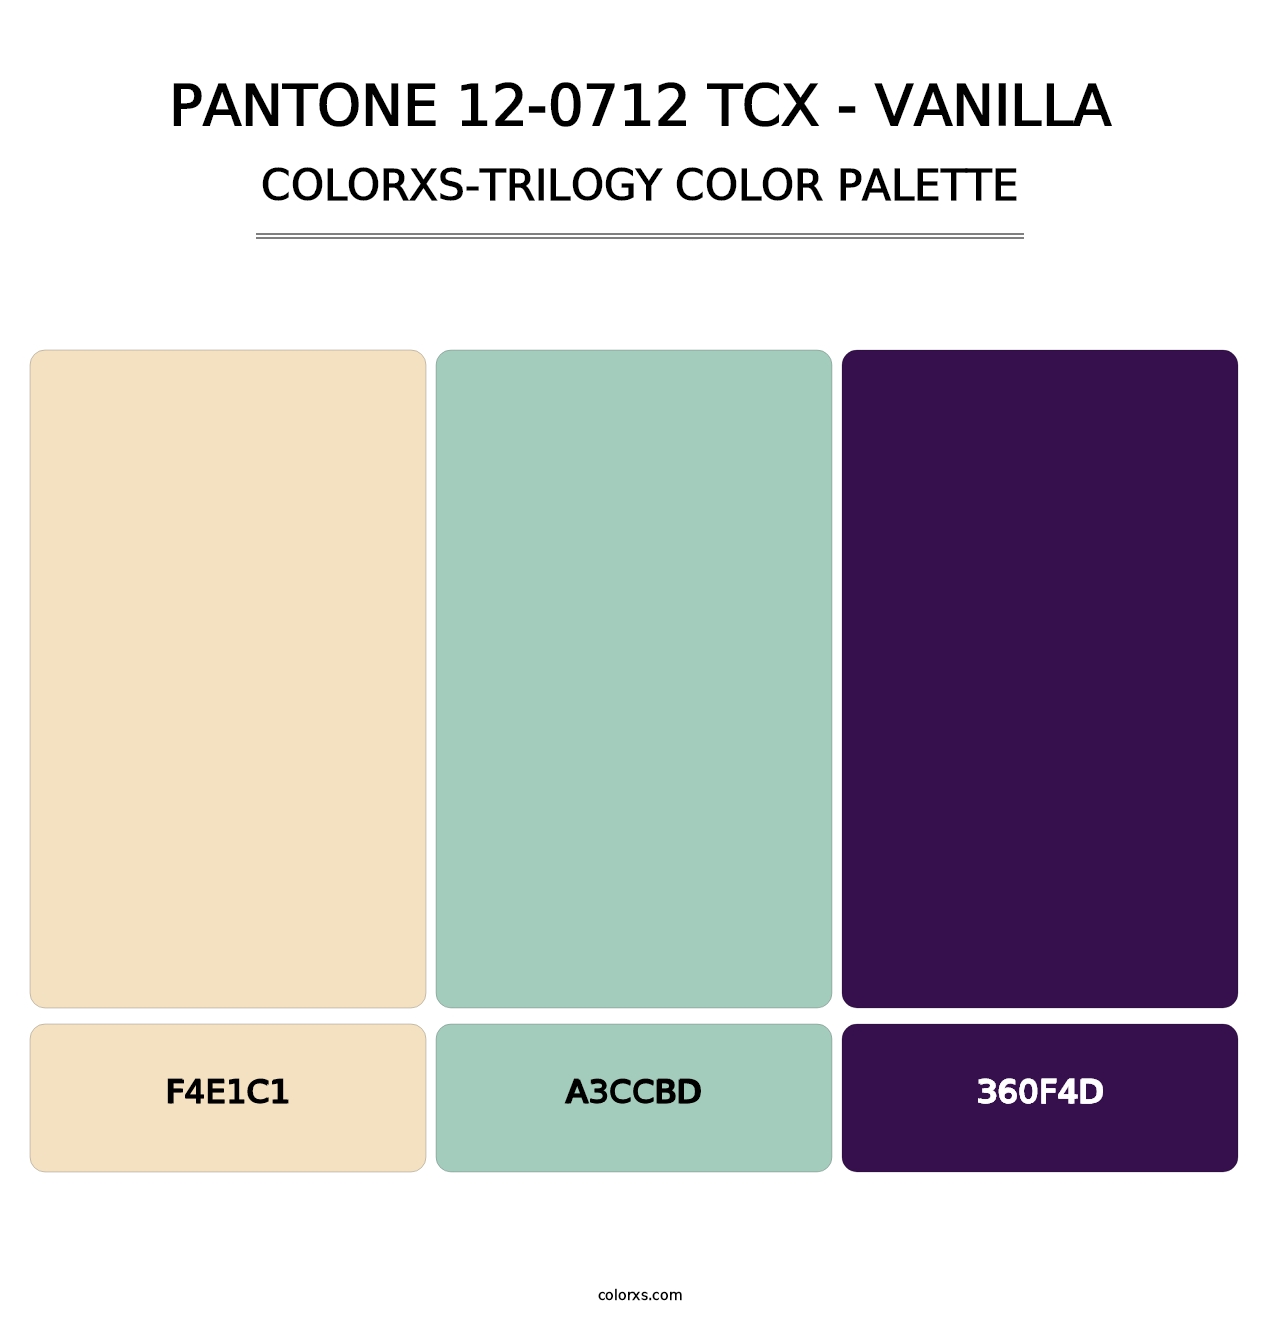 PANTONE 12-0712 TCX - Vanilla - Colorxs Trilogy Palette